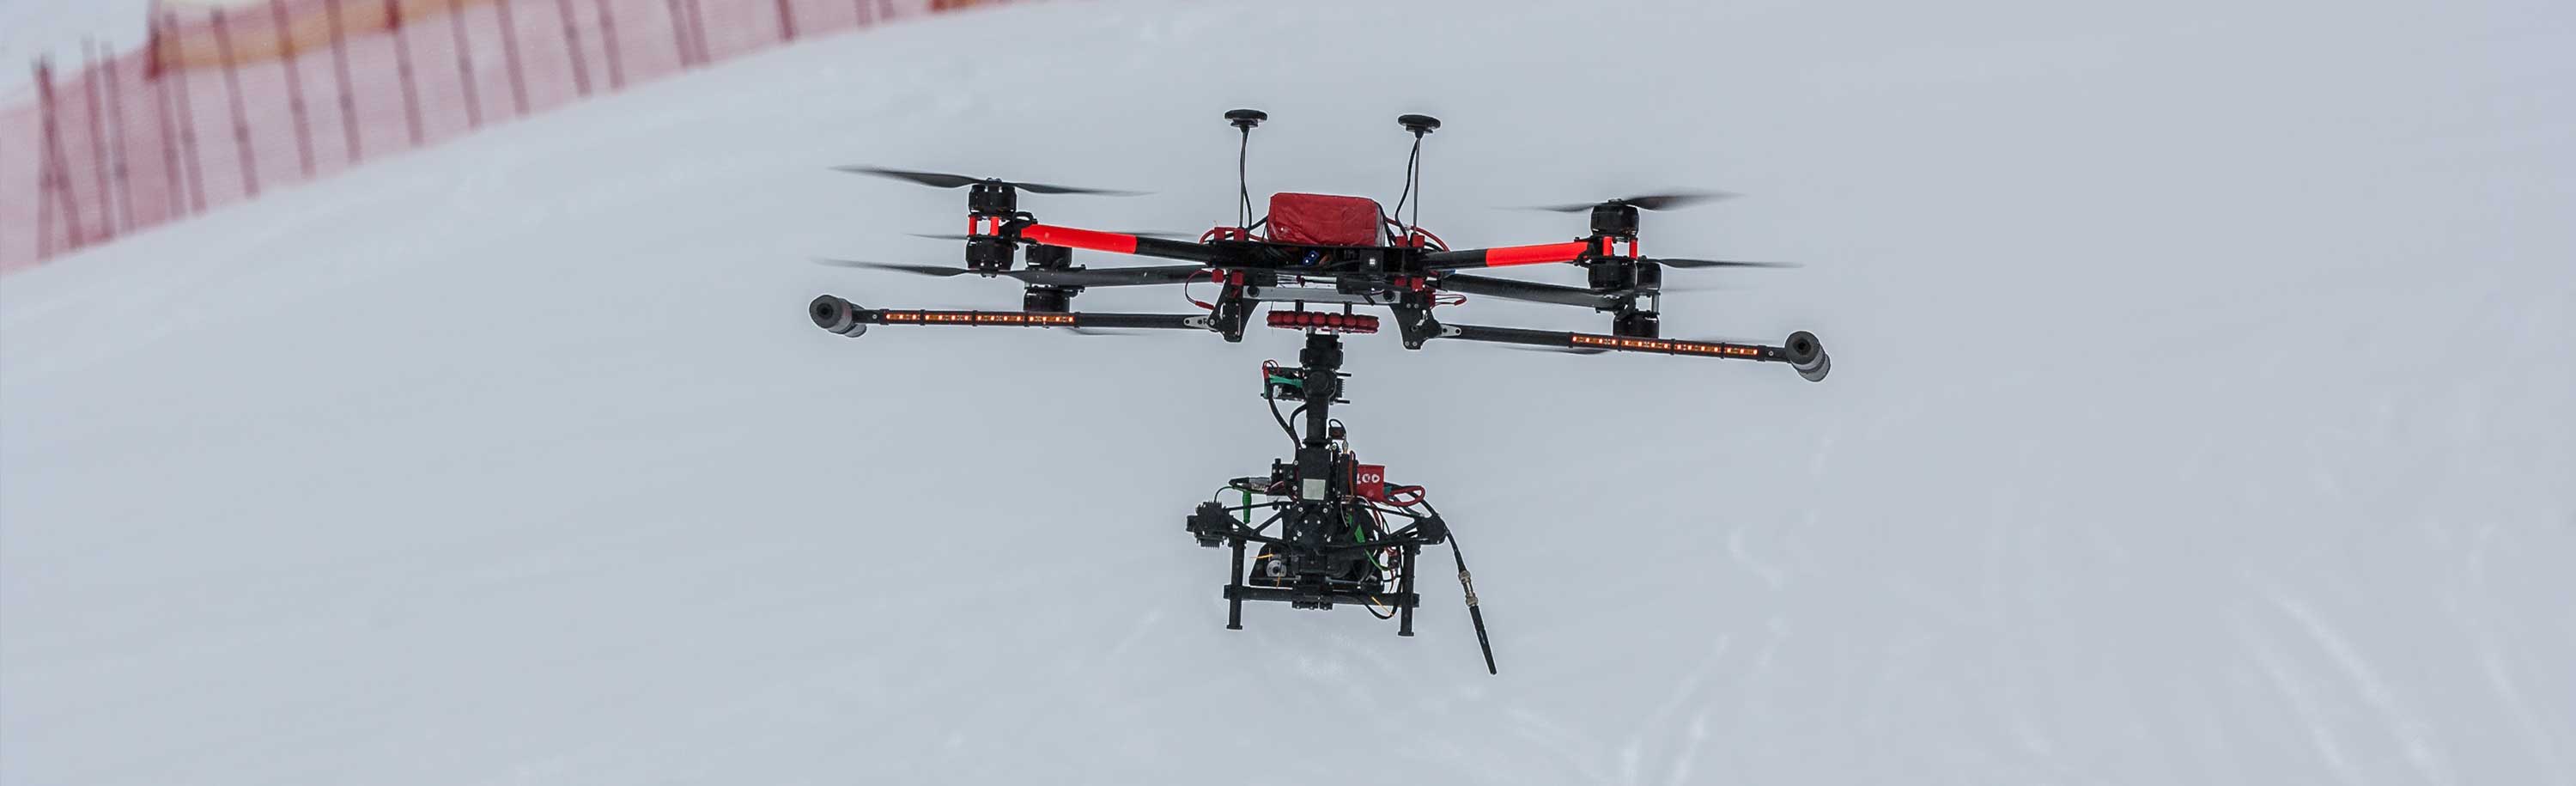 Filmaufnahme mit Drohne im Schnee